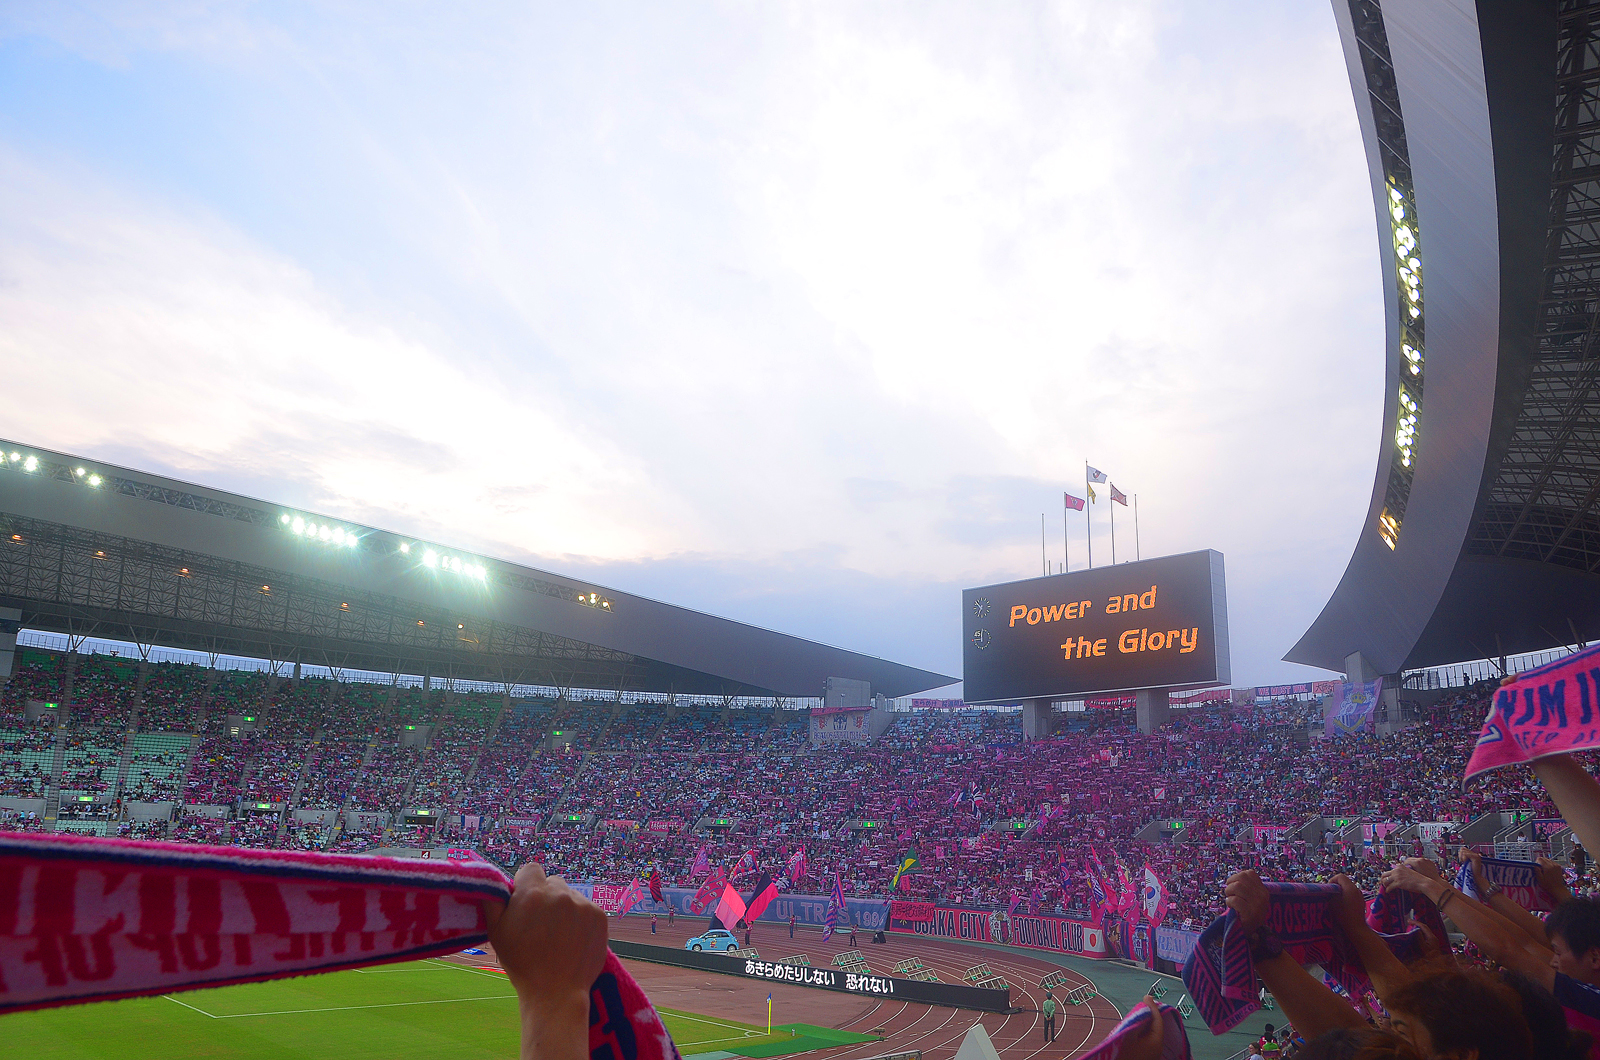 セレッソ大阪狂乱観戦記 O lunatico amou futebol: スタジアム維持費がどうこう言うのはアホだと思う。 #stadium